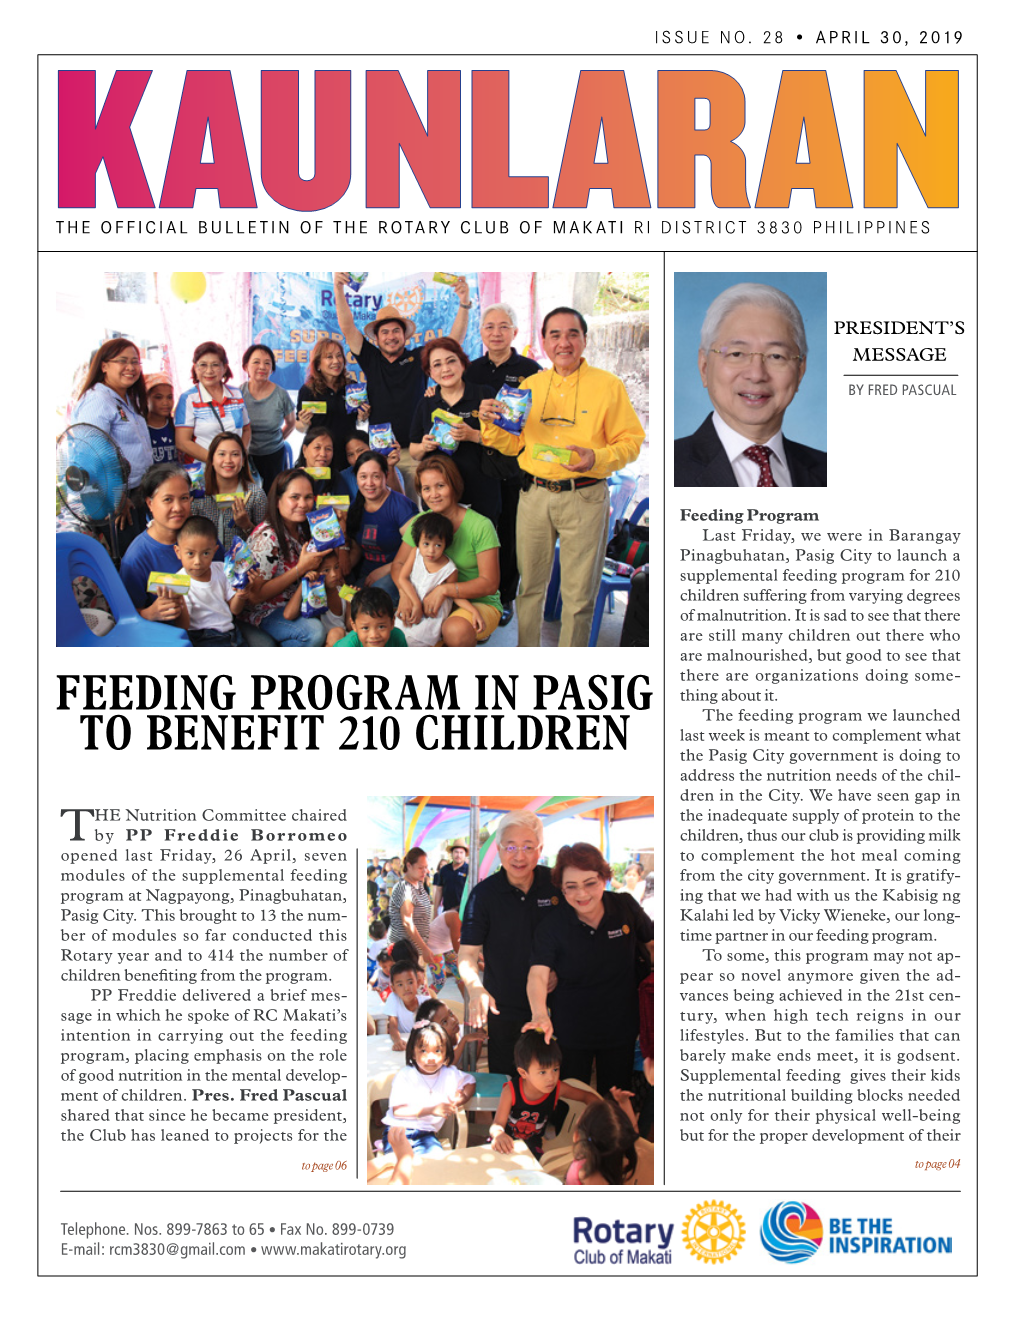 Feeding Program in Pasig to Benefit 210 Children